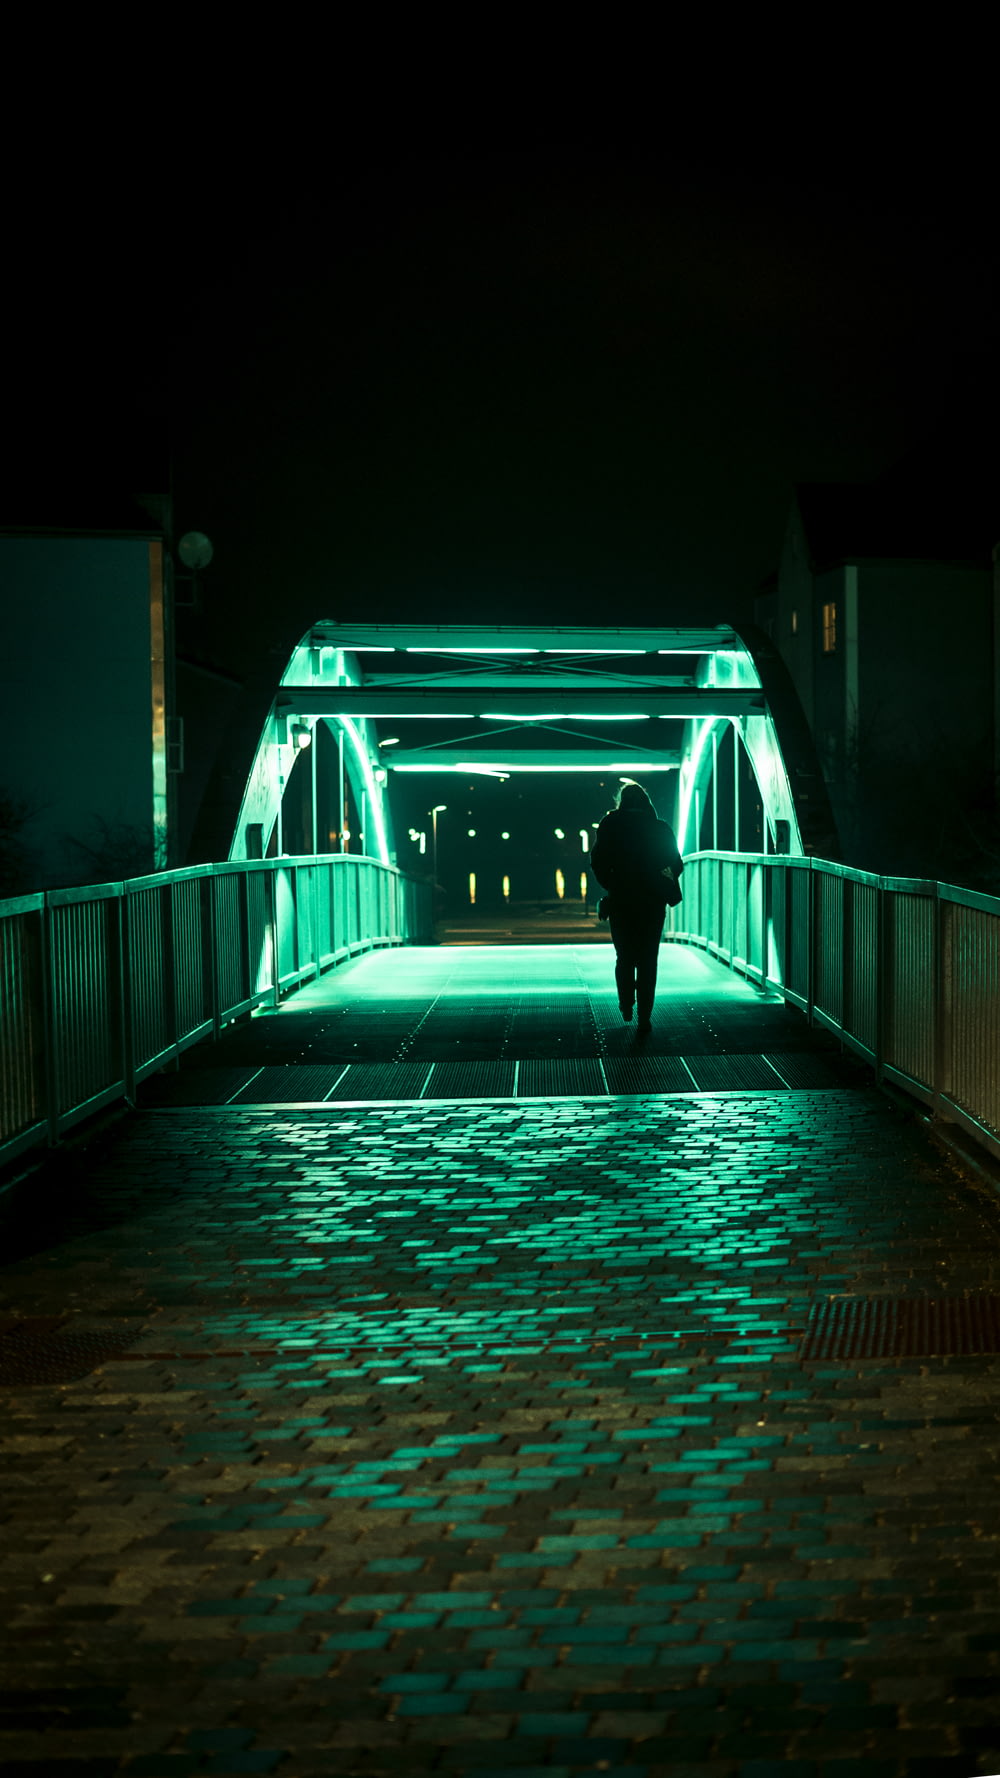 Persona que pasa sola en el puente durante la noche